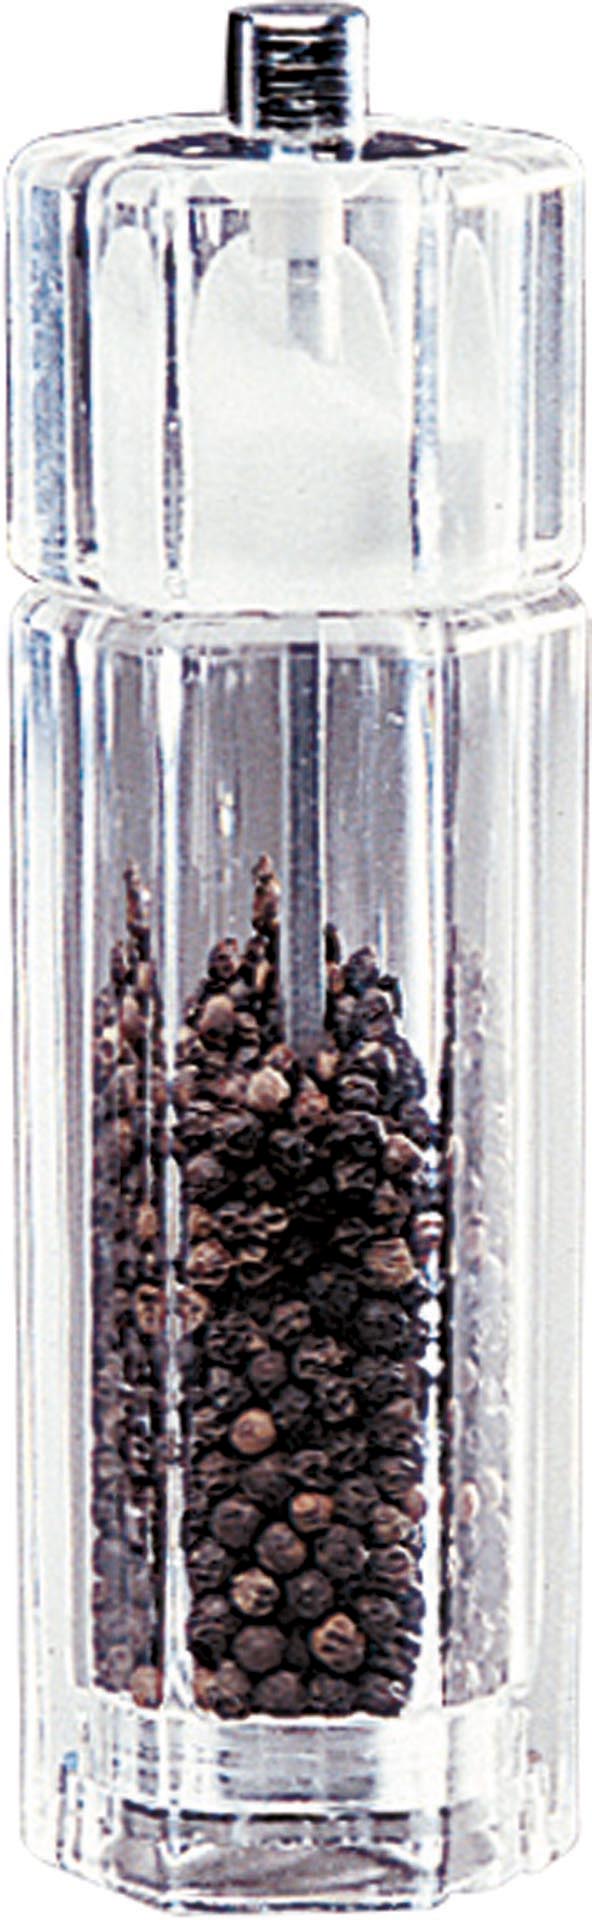 Salz-u.Pfeffermühle Kombi Acryl 16,5 cm S.131